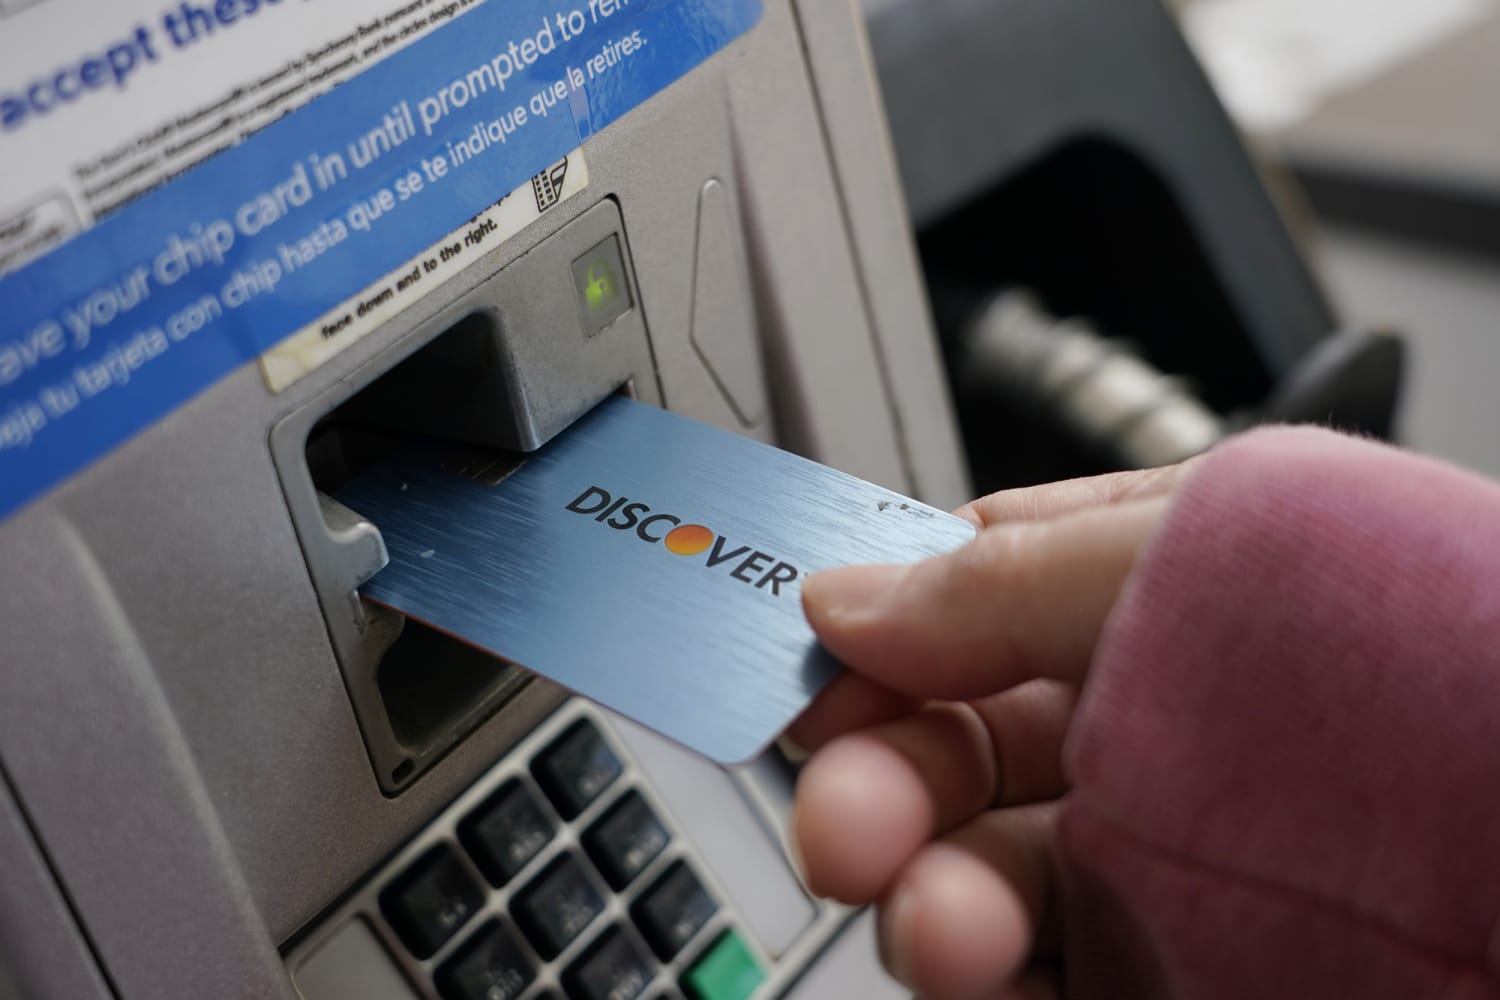 Los expertos advierten que la fusión Capital One-Discover podría ejercer más presión sobre los usuarios de tarjetas de crédito